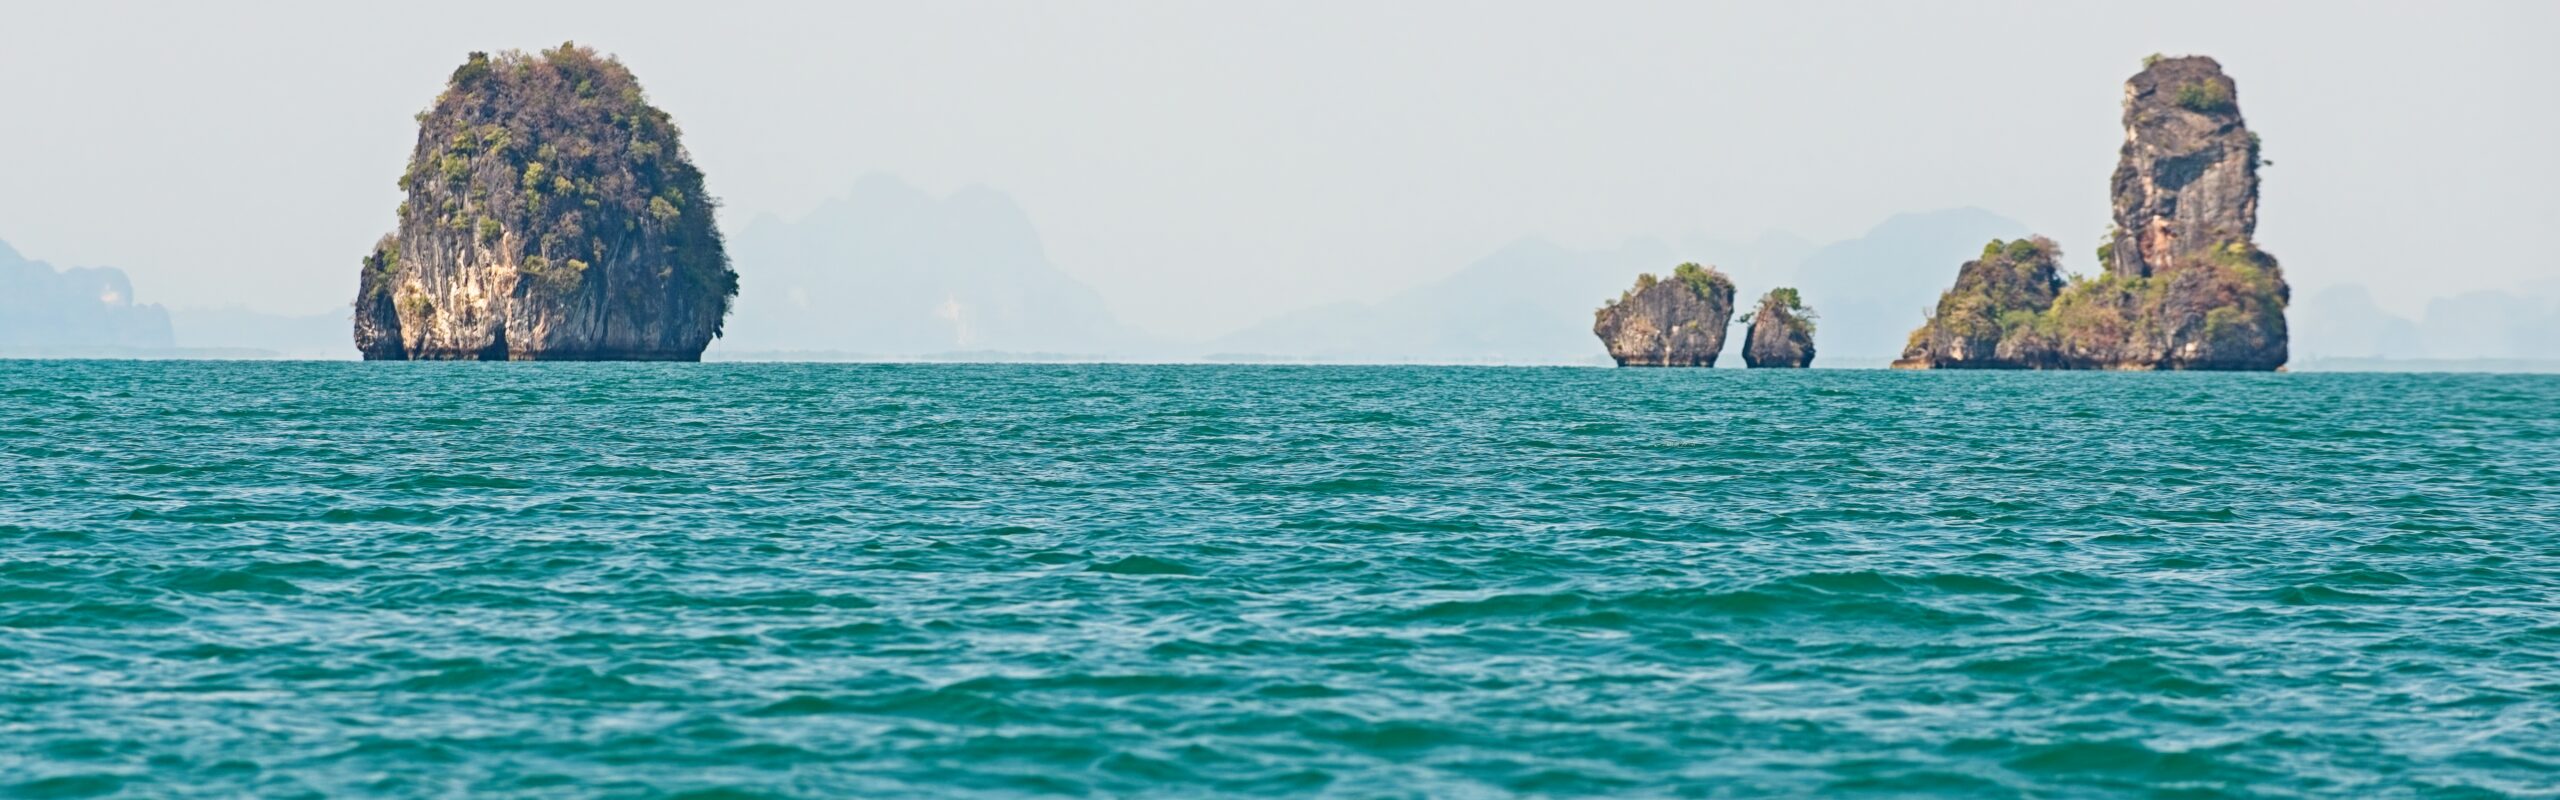 Thailand Phang Nga Bay Adamanisches Meer Krabi-Tour